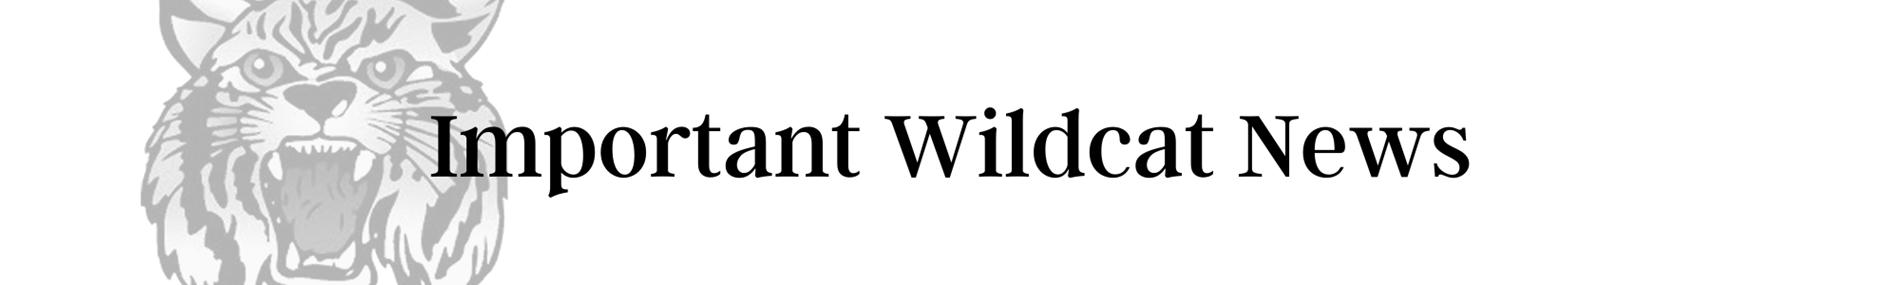 Wildcat news